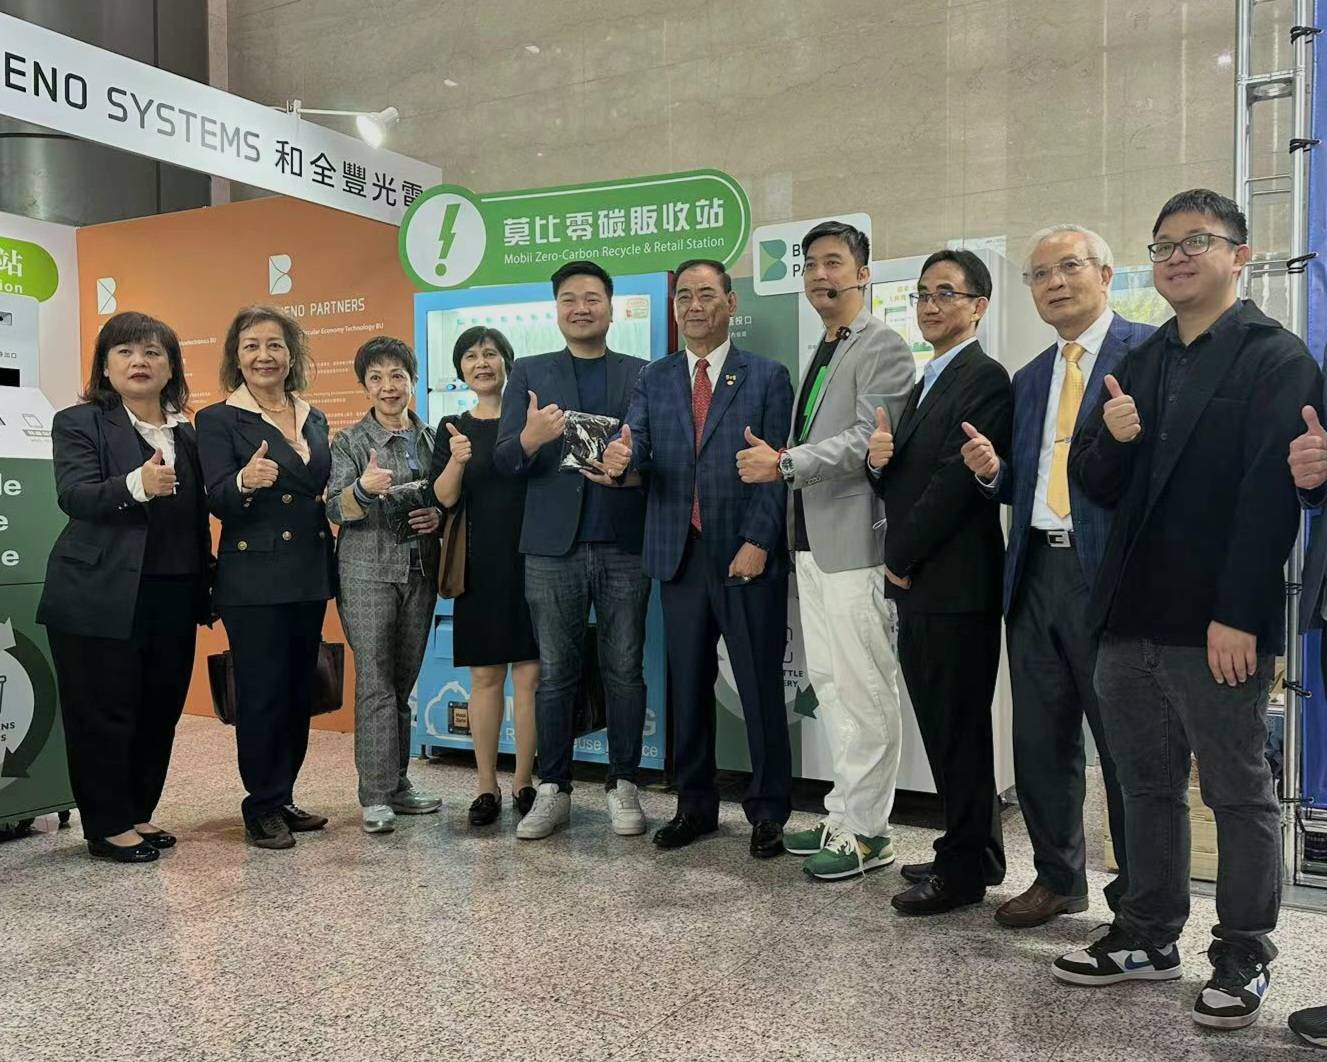 莫比綠電開啟碳晶片標準化新時代 - 早安台灣新聞 | Morning Taiwan News